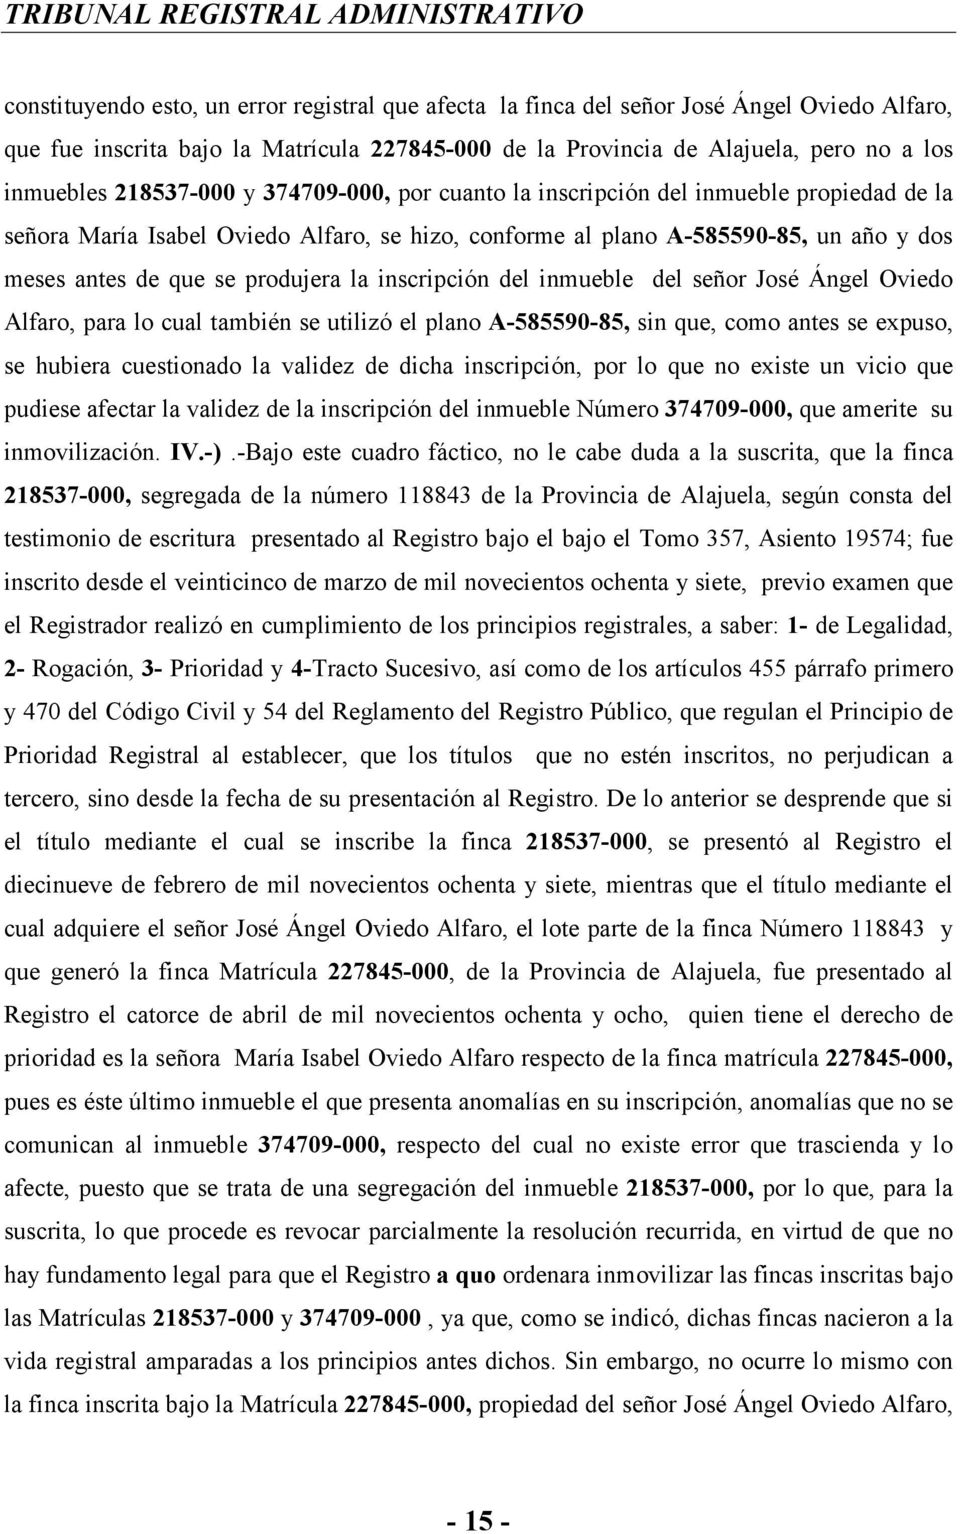 la inscripción del inmueble del señor José Ángel Oviedo Alfaro, para lo cual también se utilizó el plano A-585590-85, sin que, como antes se expuso, se hubiera cuestionado la validez de dicha